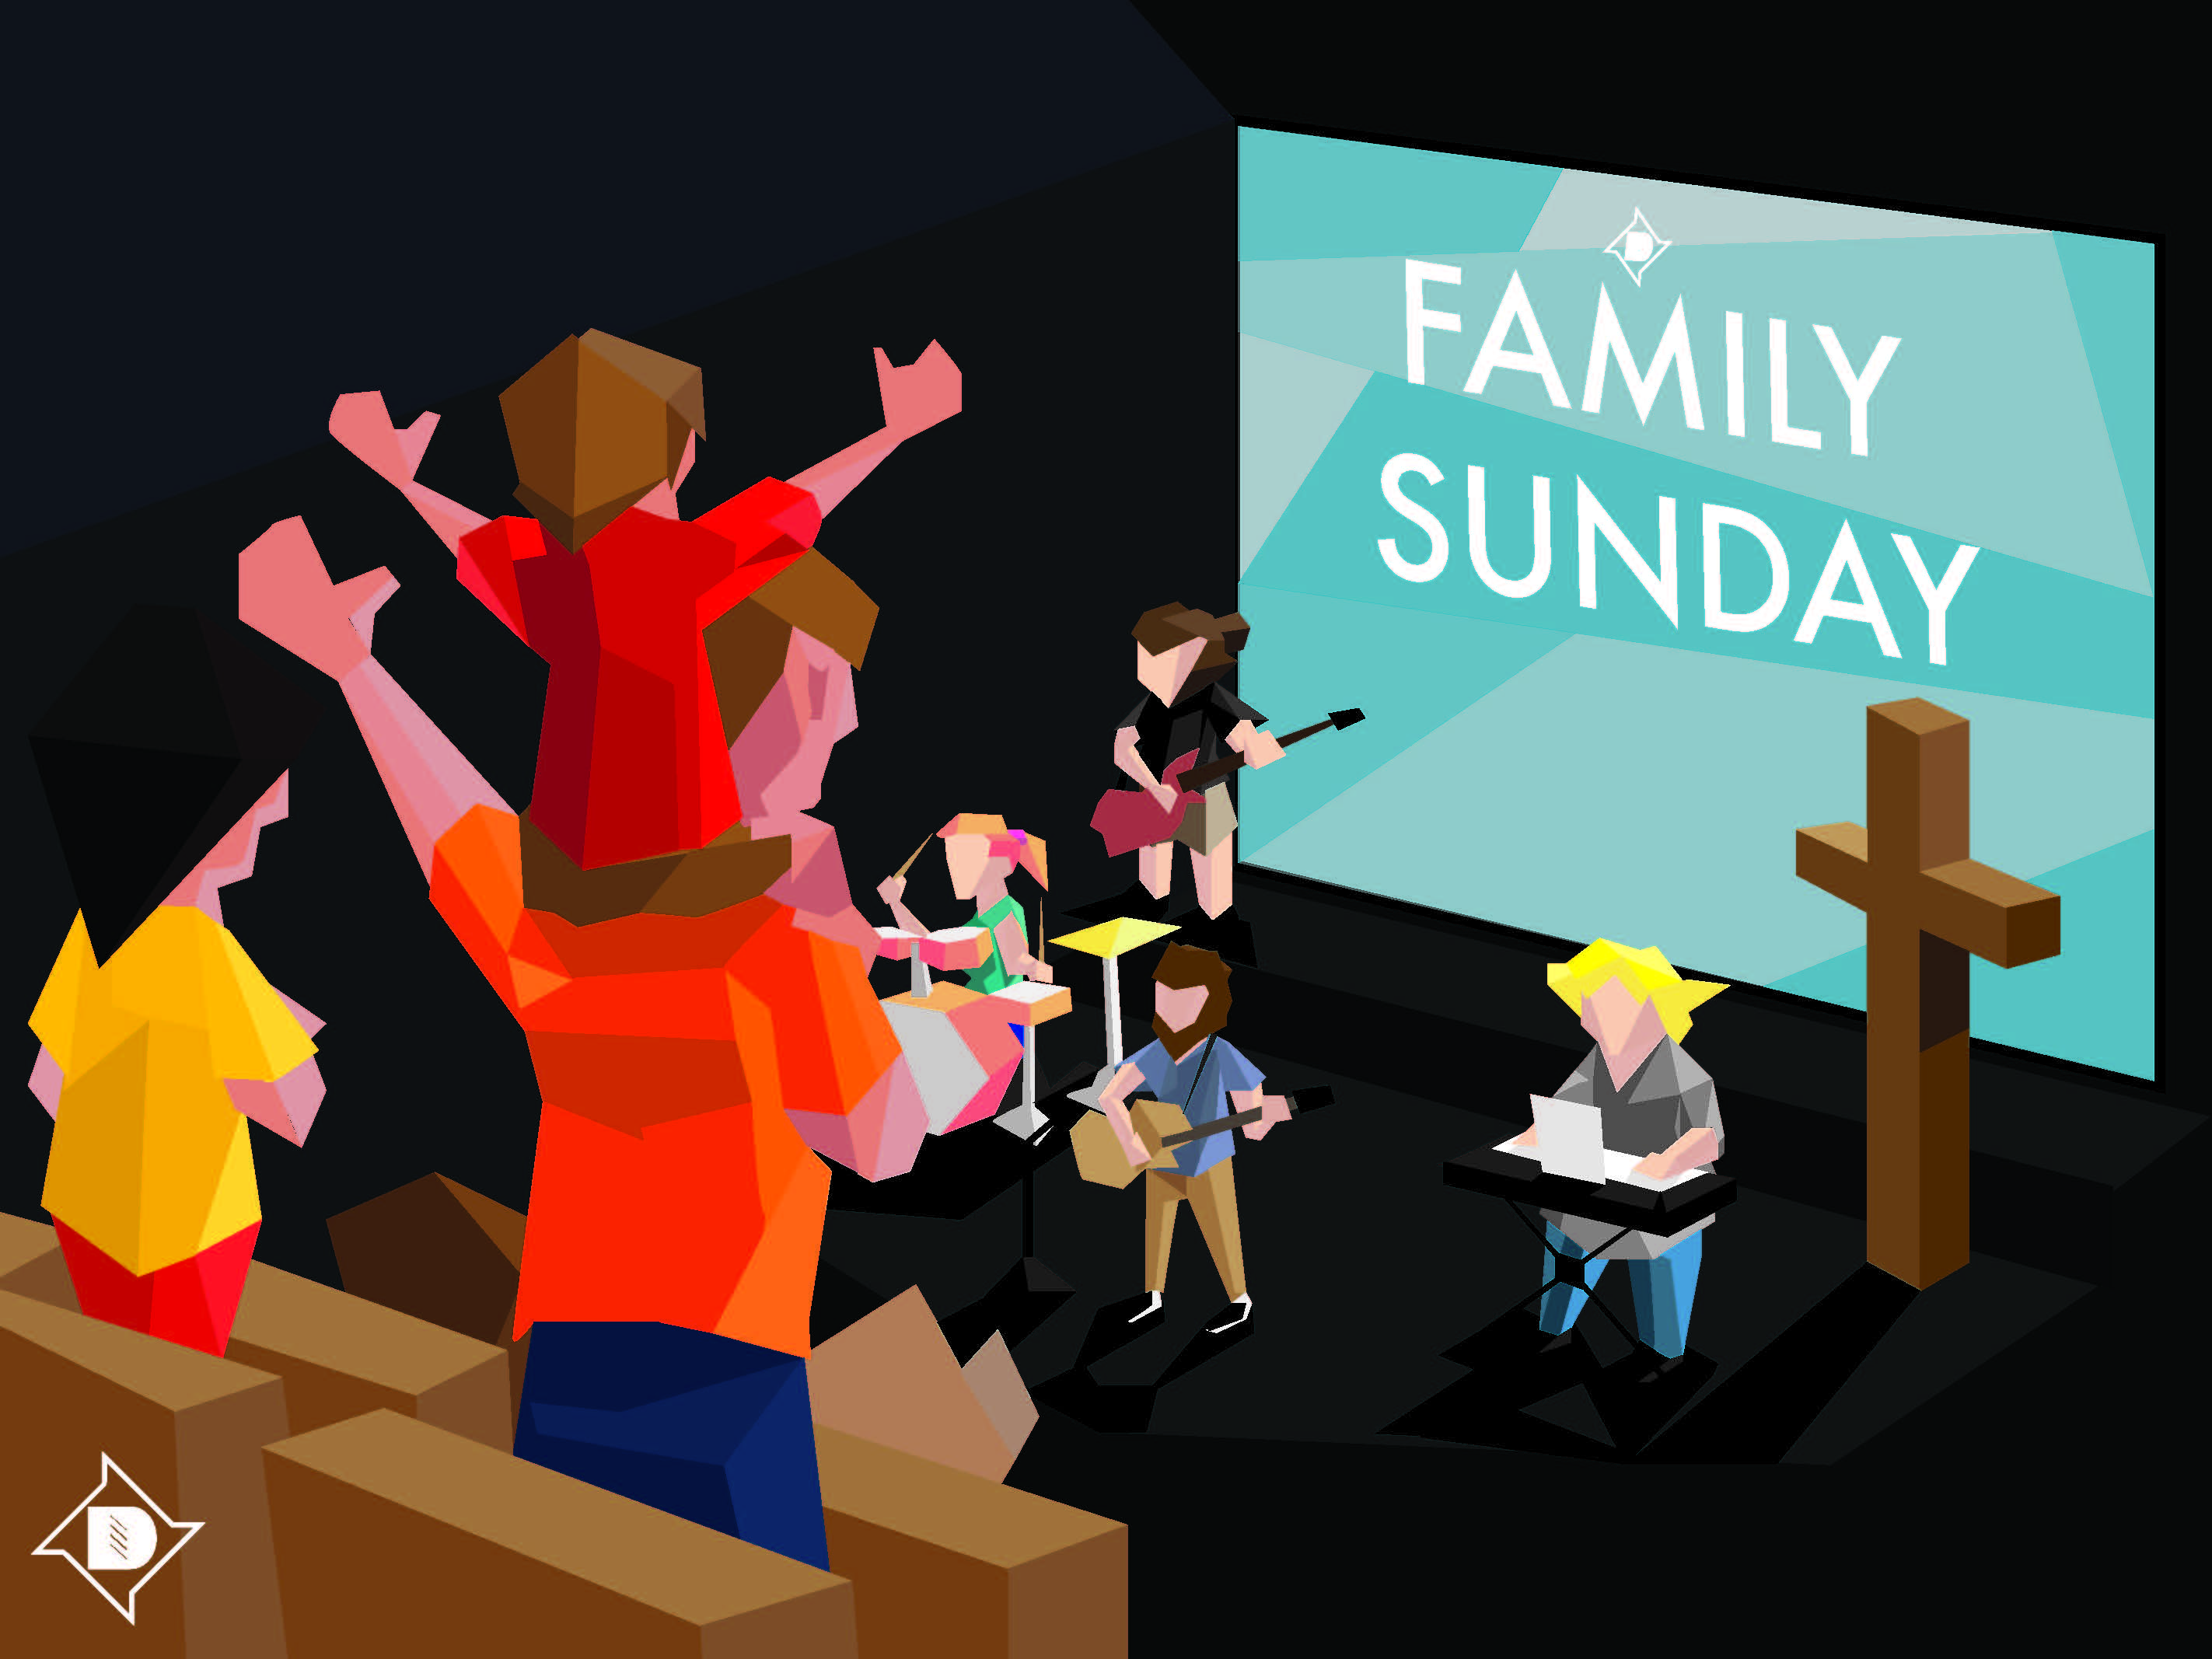 Family Sunday image